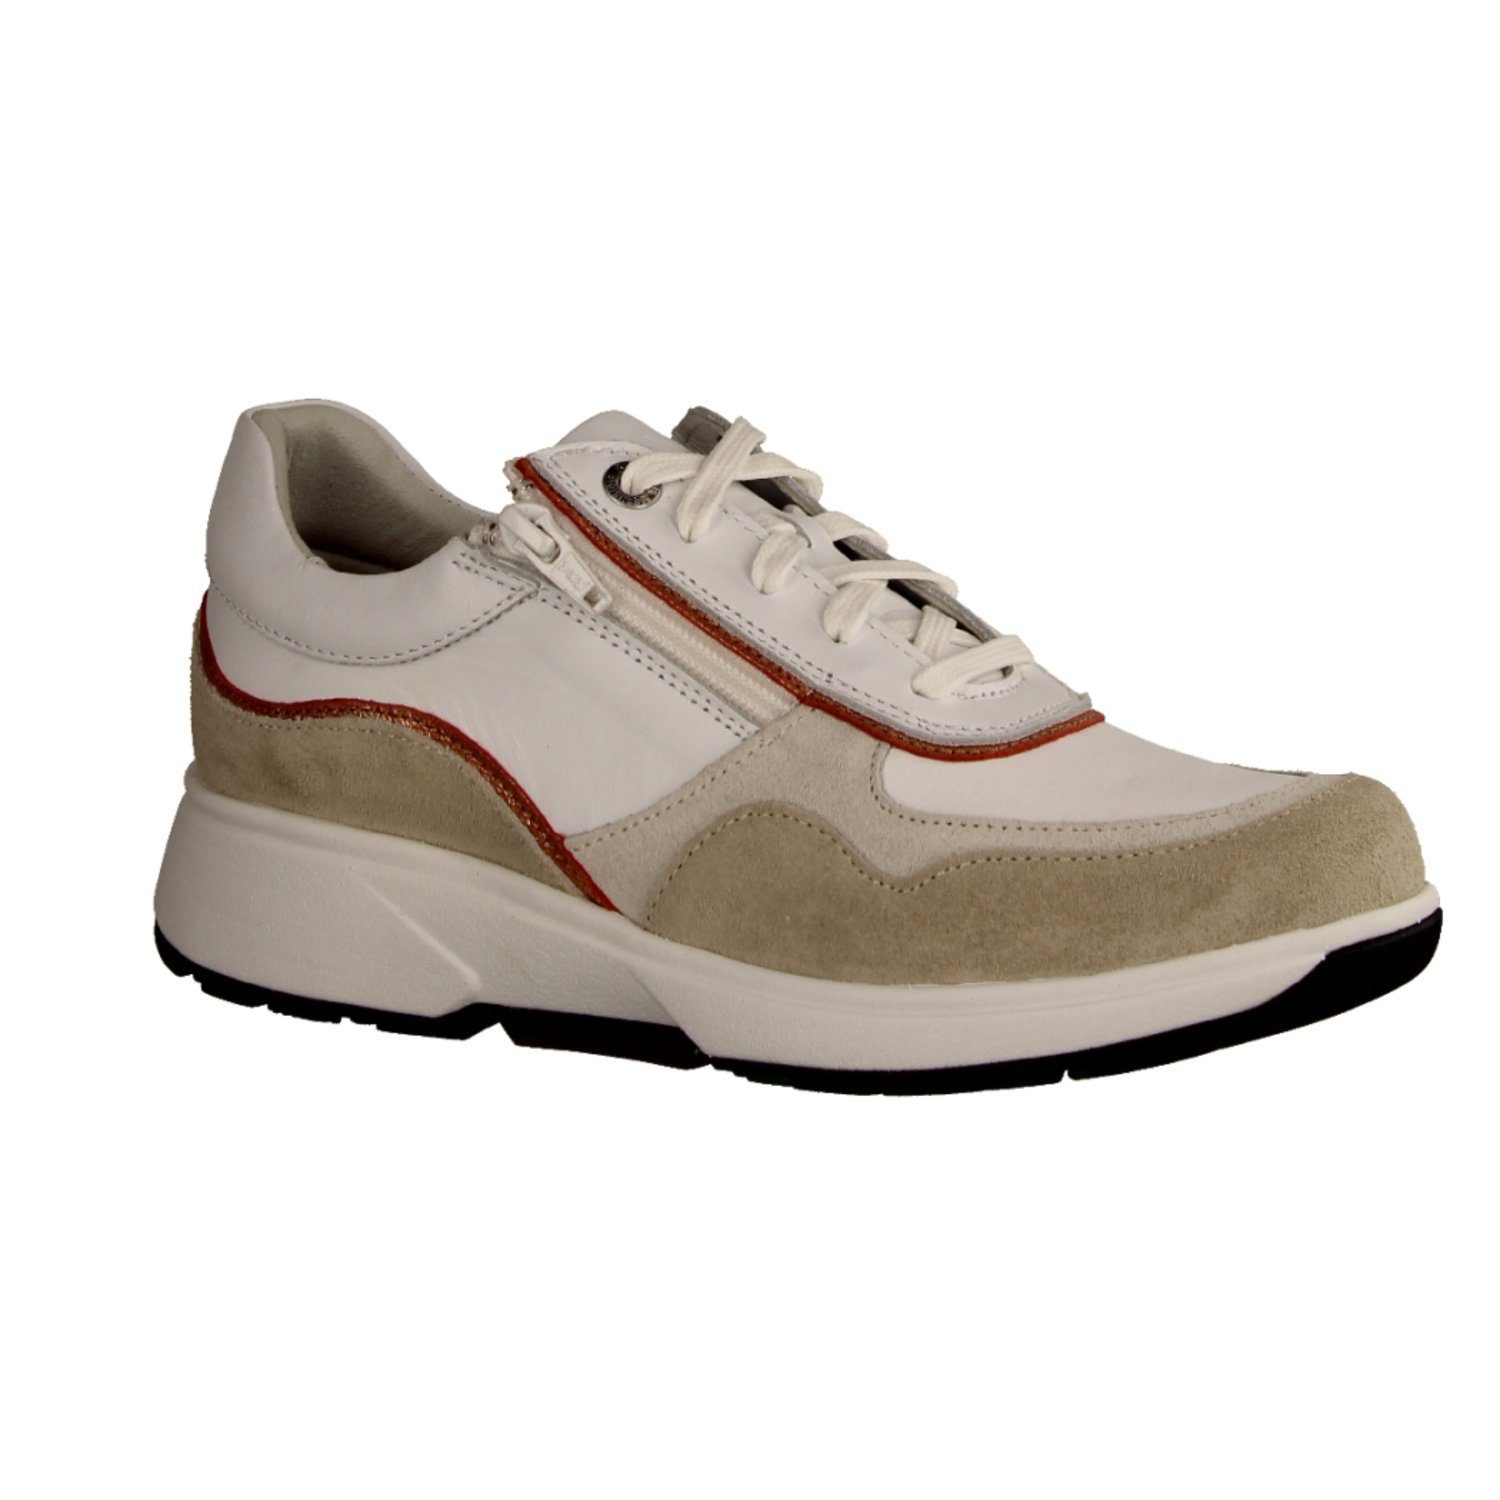 Xsensible Sneaker, Hersteller-Farbangabe: Sand/White (Beige) online kaufen  | OTTO